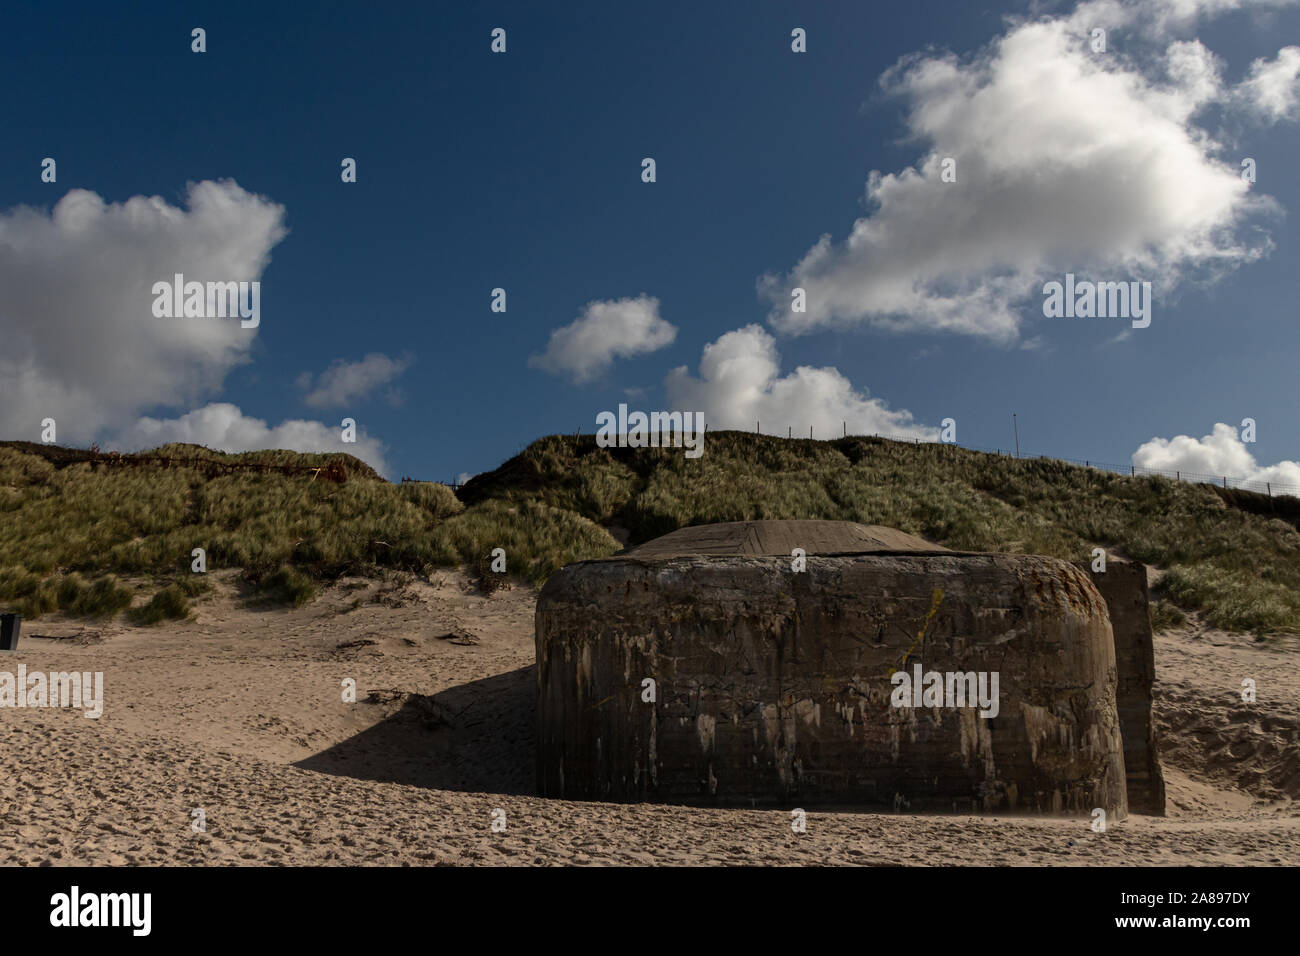 Bunker am Strand der Nordsee Stock Photo